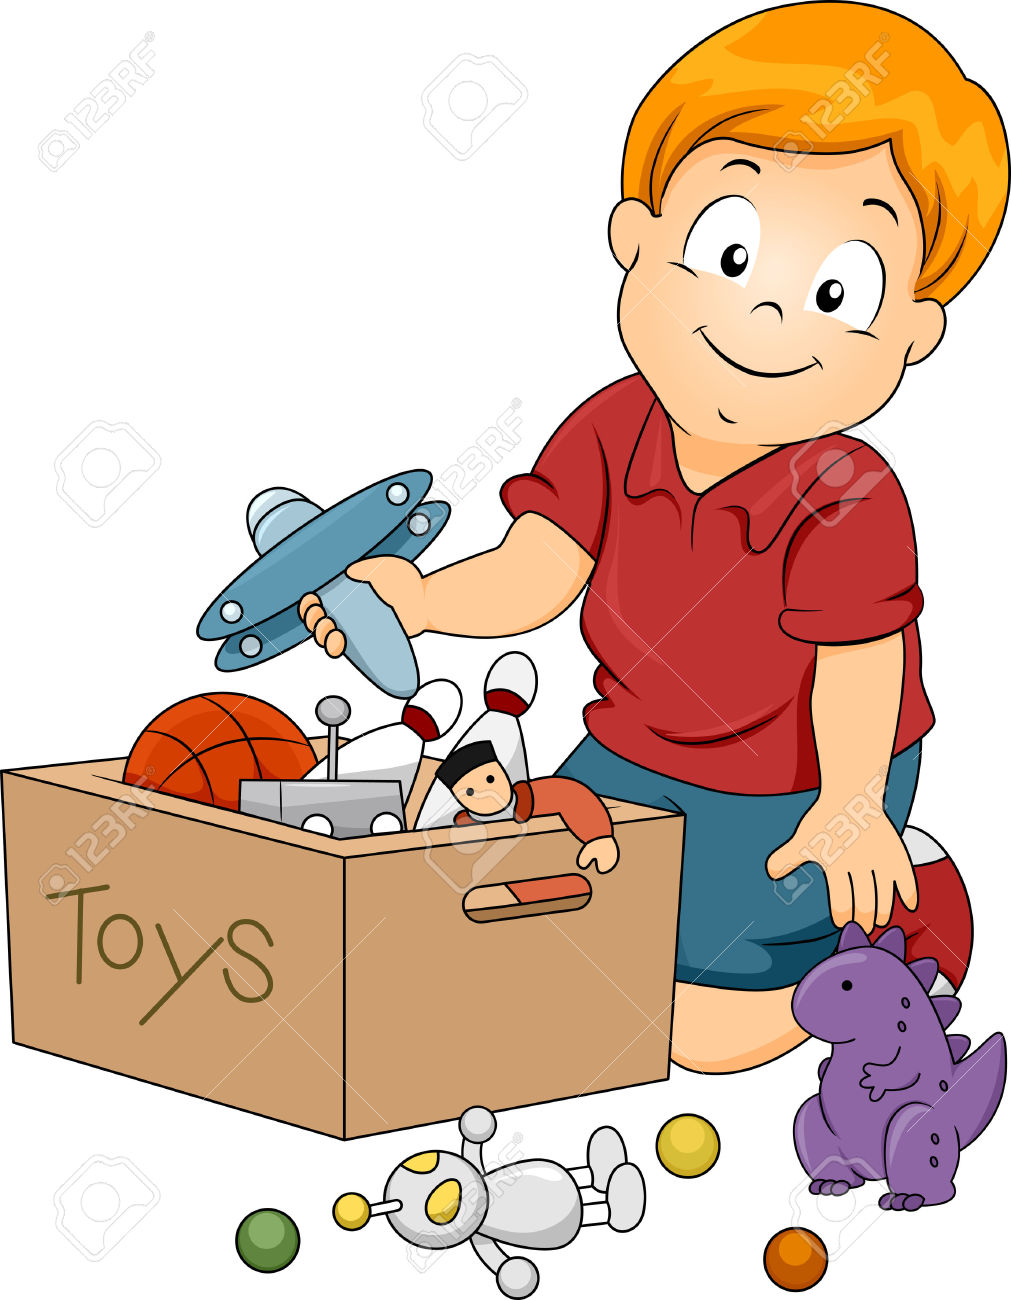 toy box: Illustration of Kid Boy Storing Toys